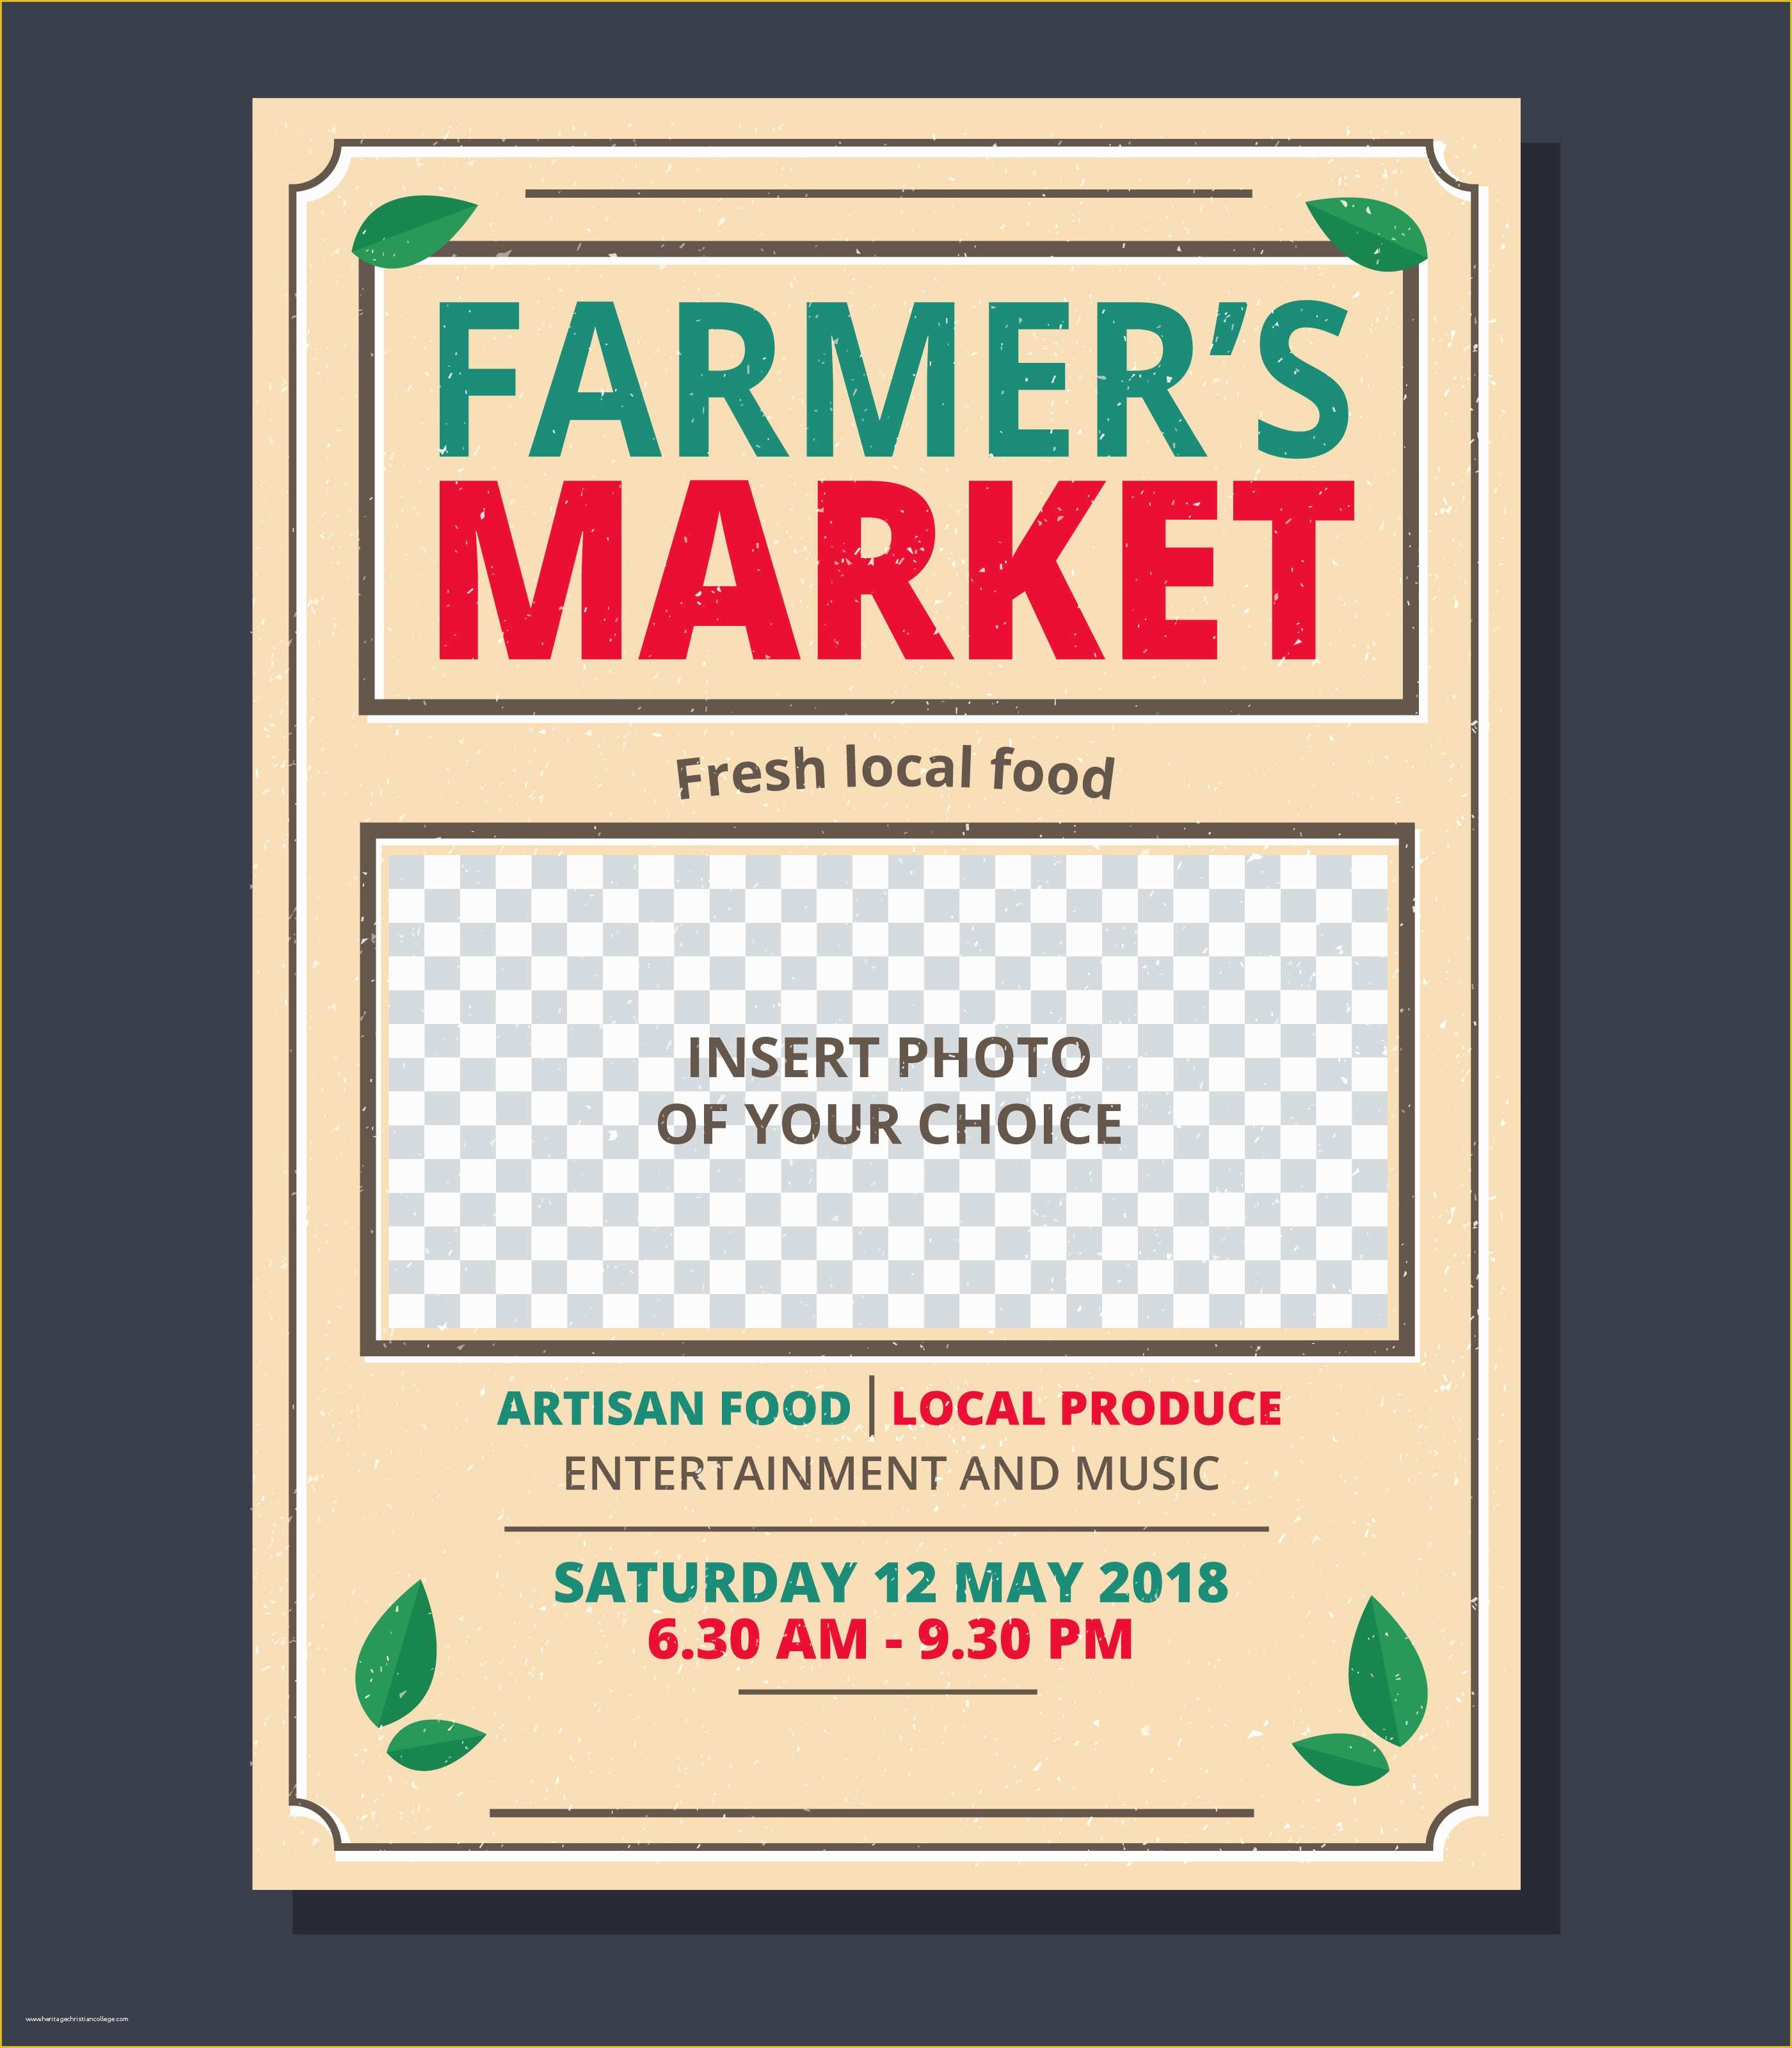 Farmers Market Flyer Template Free Of Farmer S Market Flyer Template Download Free Vector Art